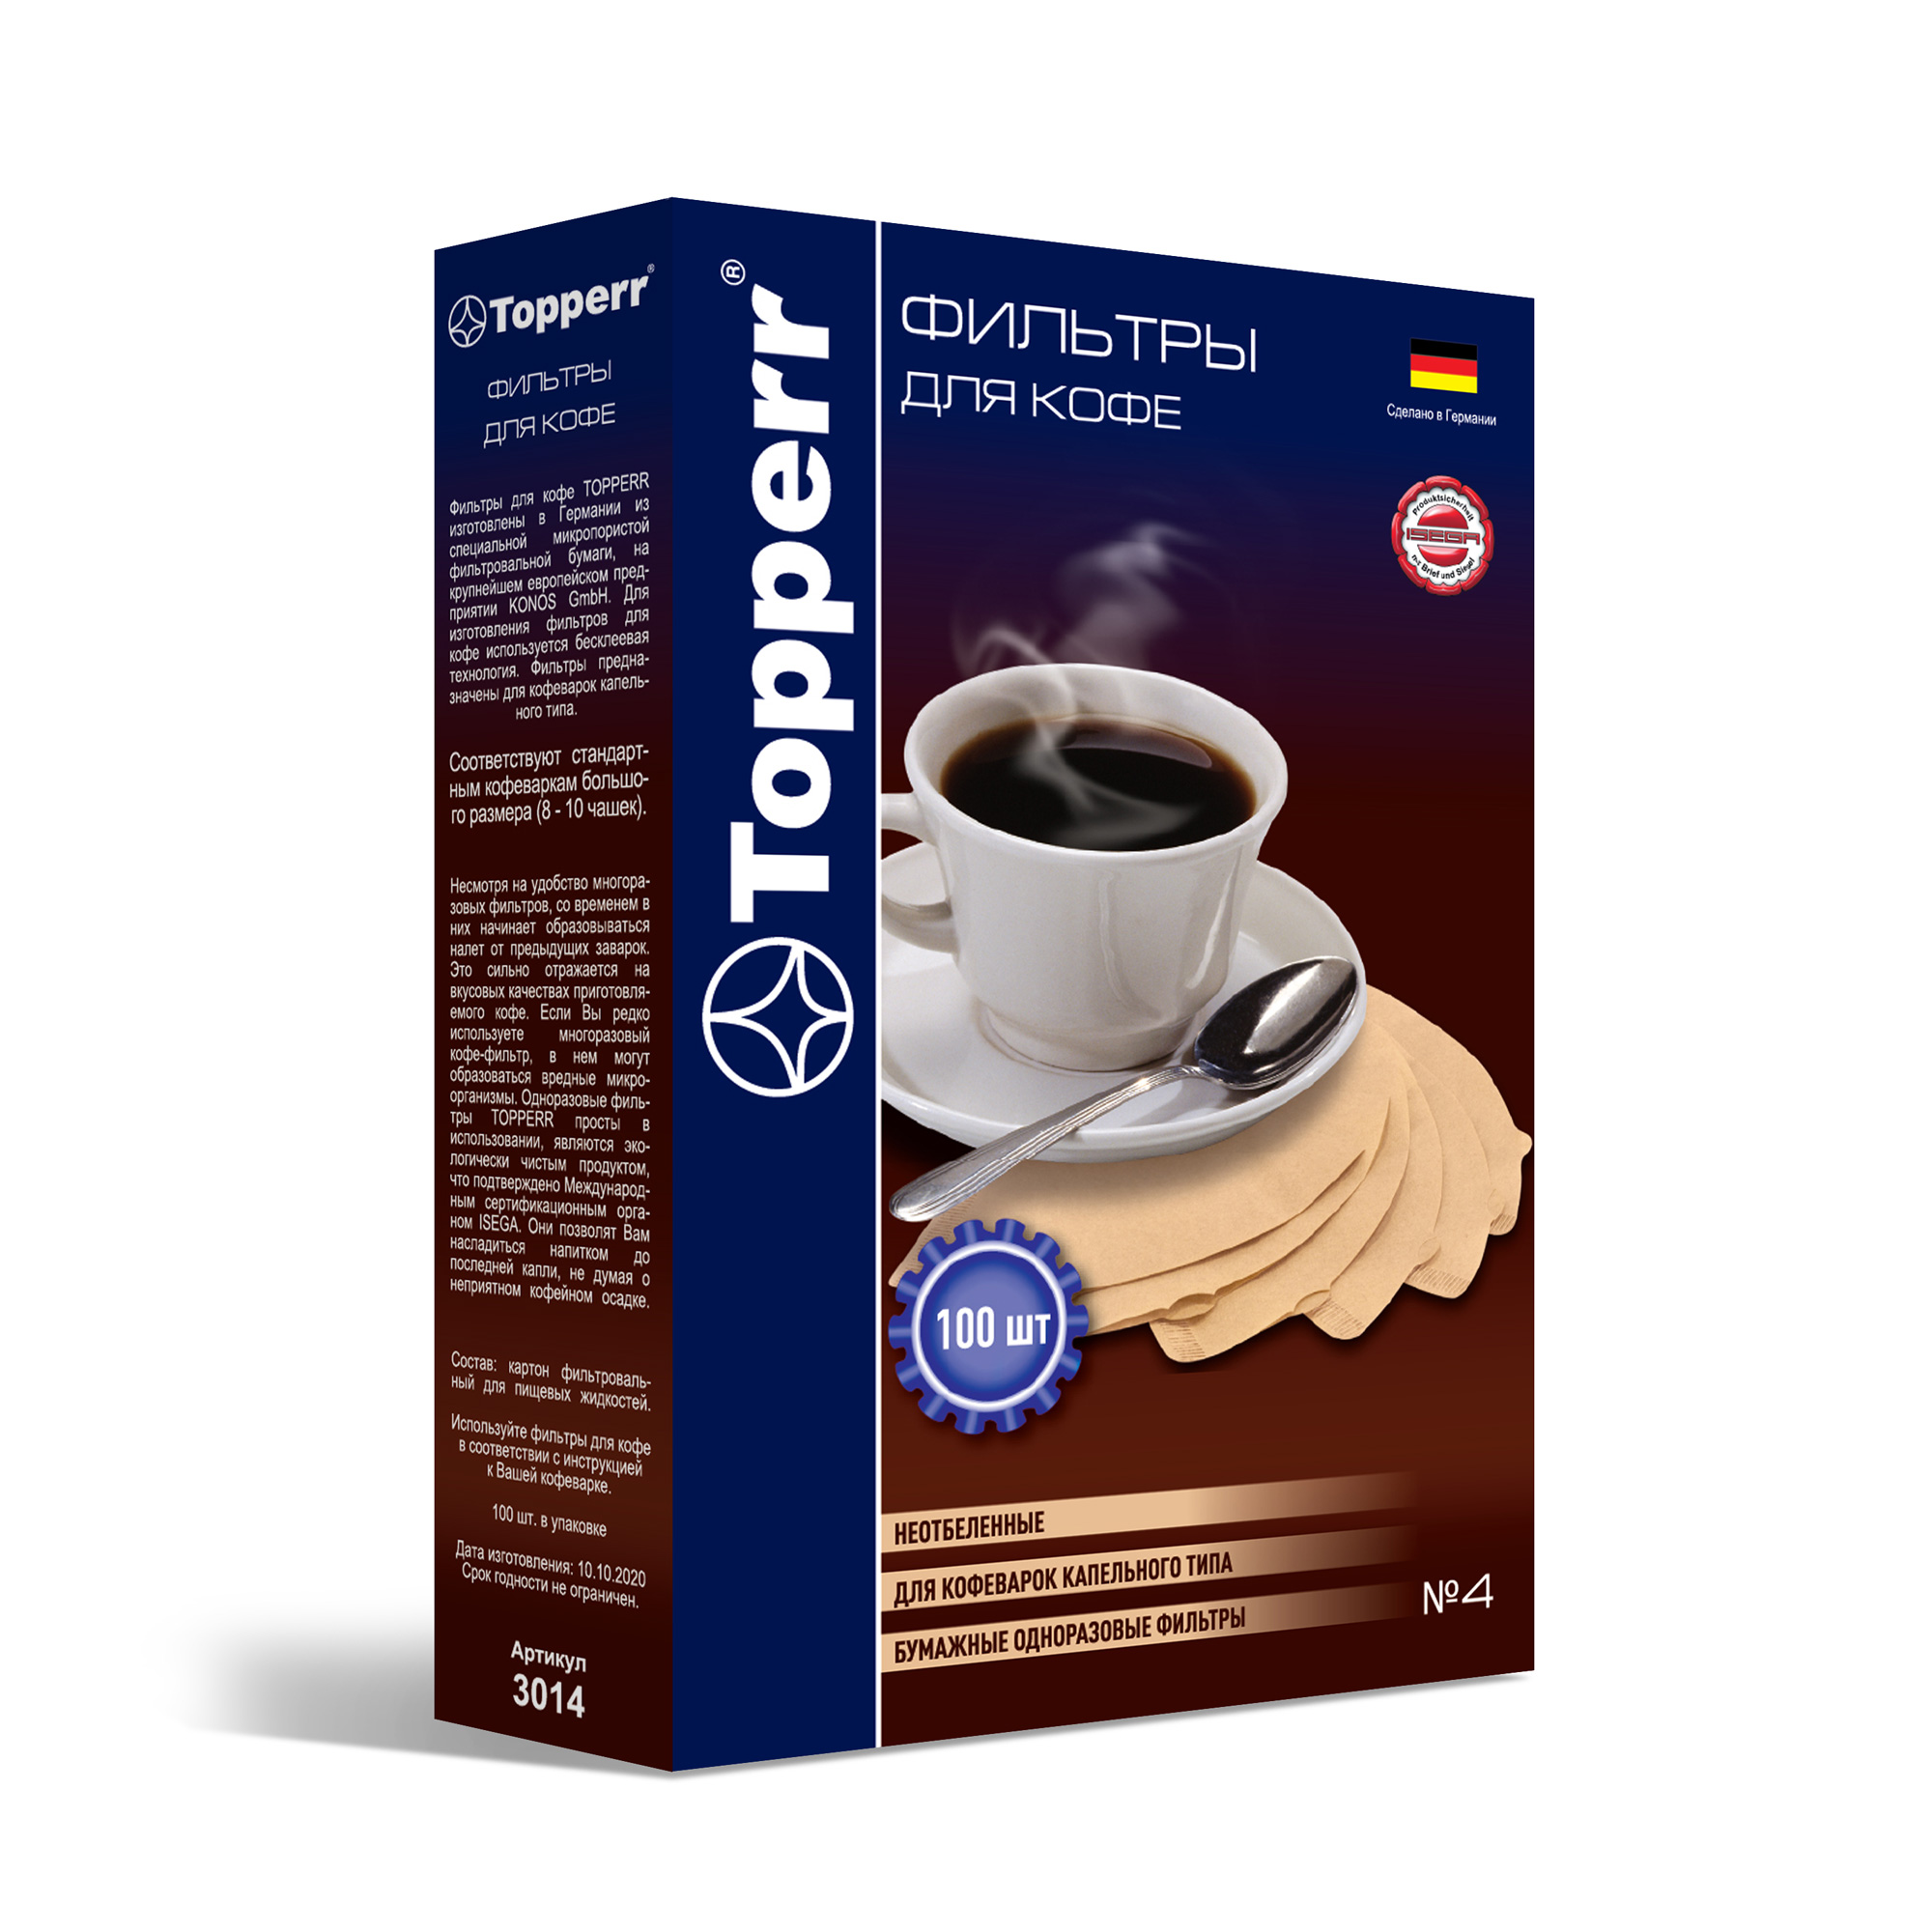 Topperr 3014 фильтр бумажный для кофеварок №4, неотбеленный, 100 шт фильтр бумажный для кофеварок 4 topperr 100шт неотбеленный